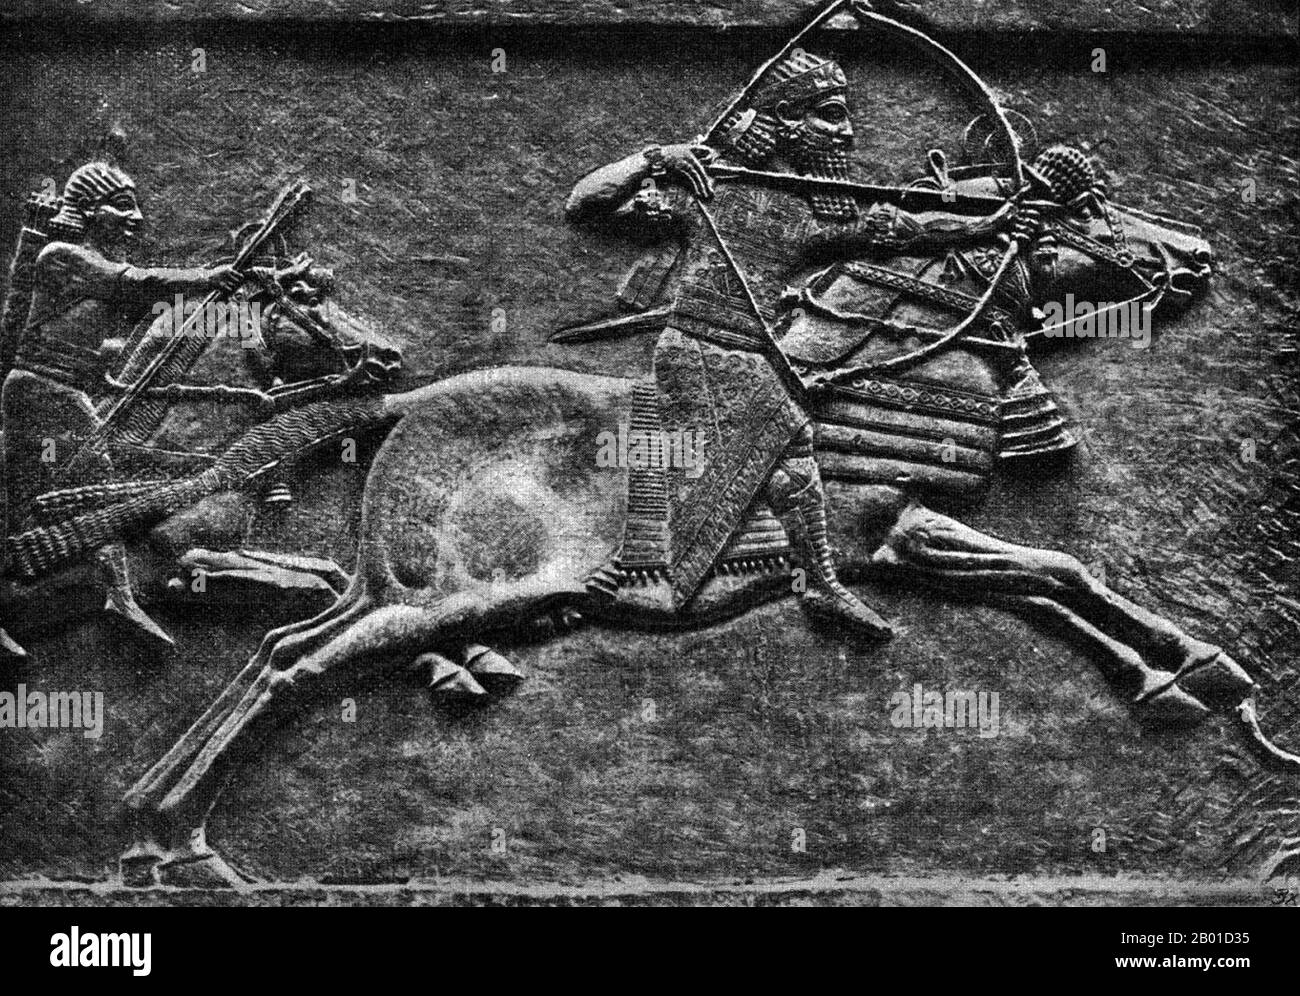 Irak: König Aschurbanipal (685-627 v. Chr.) Jagd in einem Palast Relief aus Ninive, c. 640 BCE. Aschurbanipal, auch Assurbanipal oder Aschurbanipal geschrieben, war ein assyrischer König, der Sohn von Esarhaddon und der letzte große König des neo-assyrischen Reiches (r. 668-627 BCE). Er gründete die erste systematisch organisierte Bibliothek im alten Nahen Osten, die Bibliothek von Ashurbanipal, die heute teilweise in Ninive überlebt. In der Bibel wird er Asenappar genannt (Esra 4:10). Der römische Historiker Justinus identifizierte ihn als Sardanapalus. Stockfoto